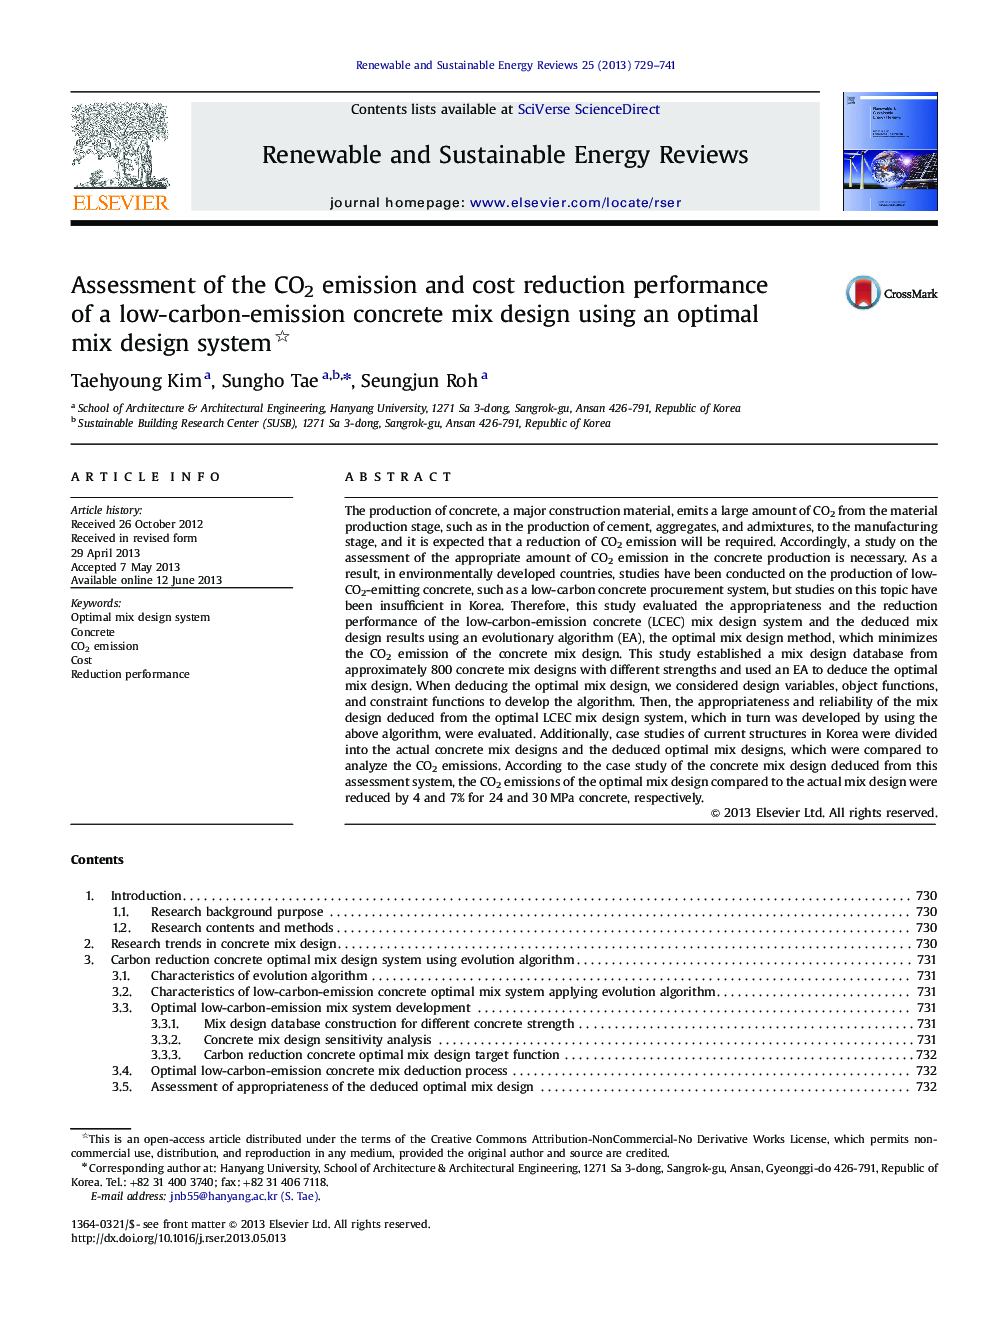 ارزیابی میزان انتشار گازهای گلخانه ای و کاهش هزینه های یک طراحی مخلوط بتن با کم کربن با استفاده از یک سیستم طراحی مخلوط بهینه 